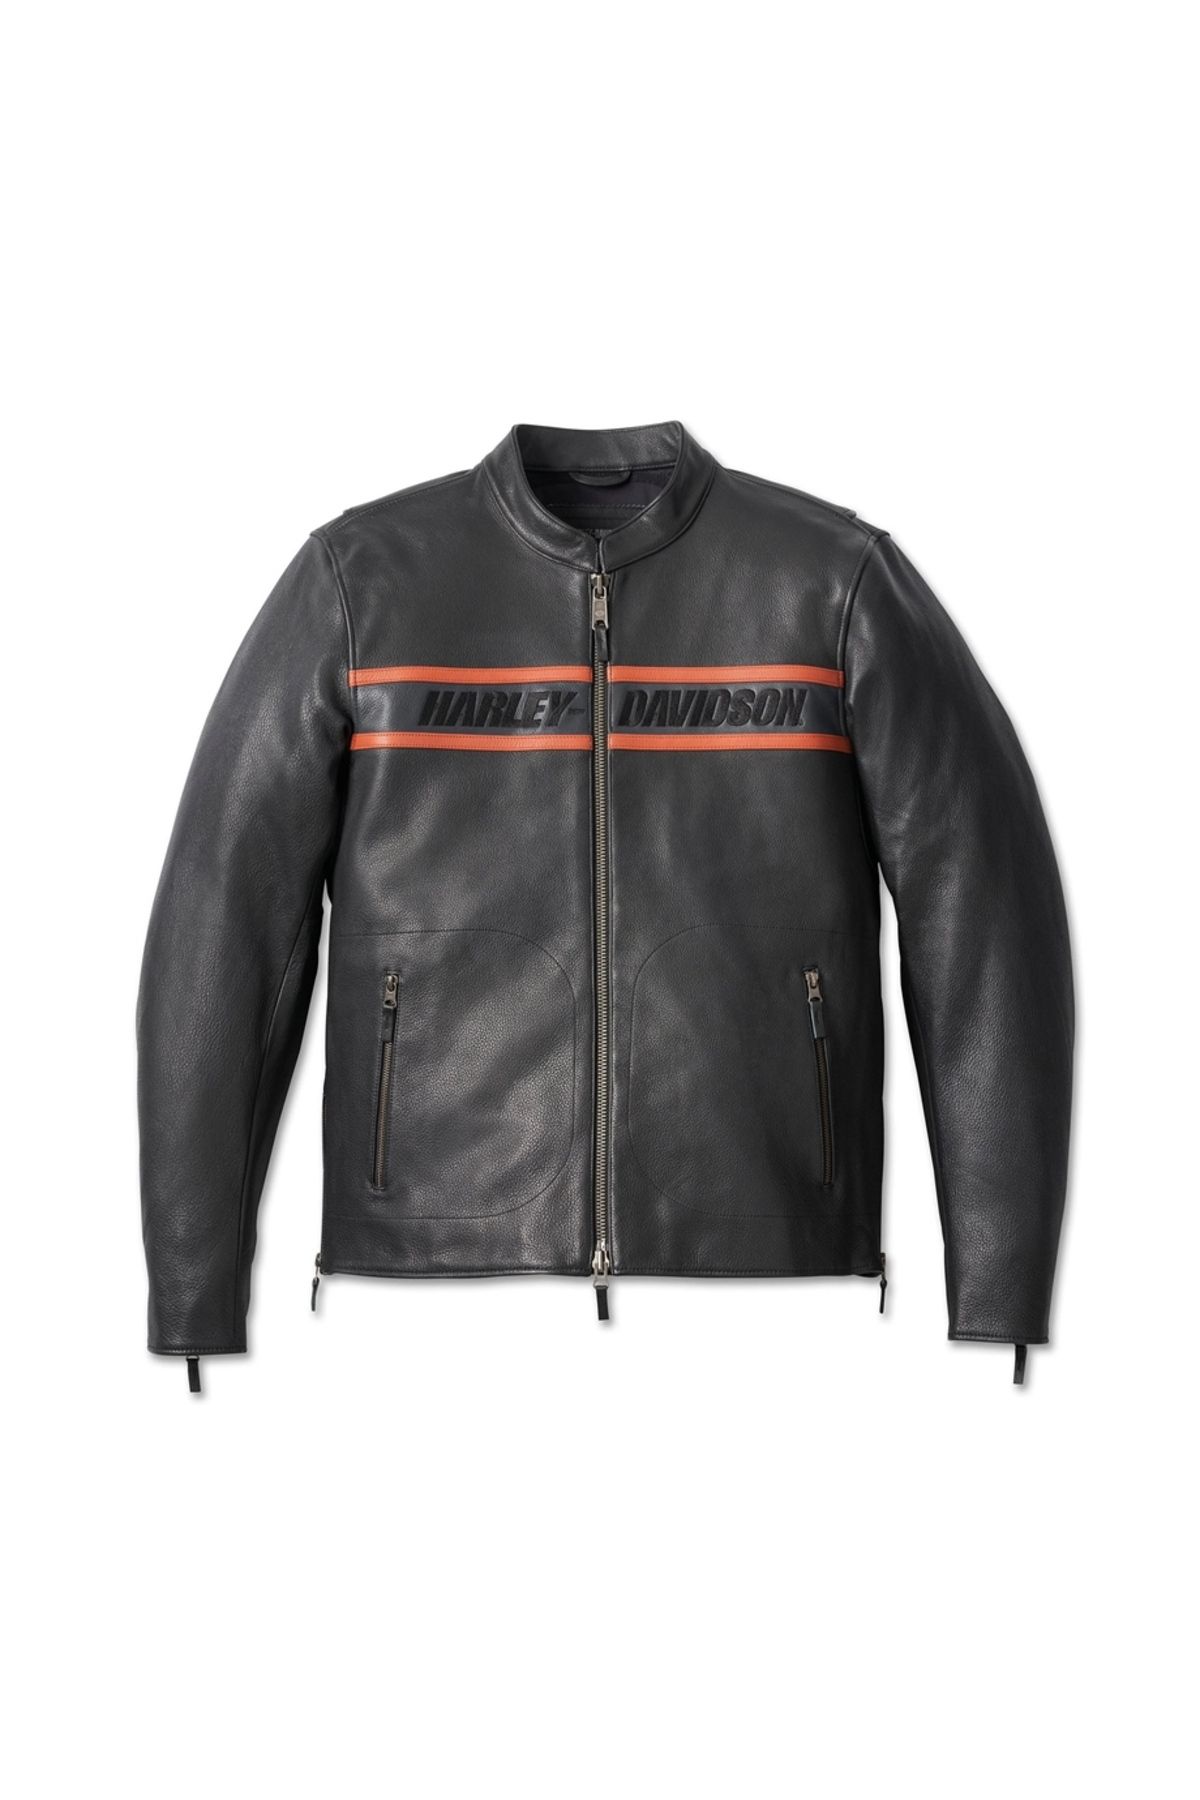 Harley Davidson Harley-davidson Men's Victory Lane Ii Leather Jacket - Black